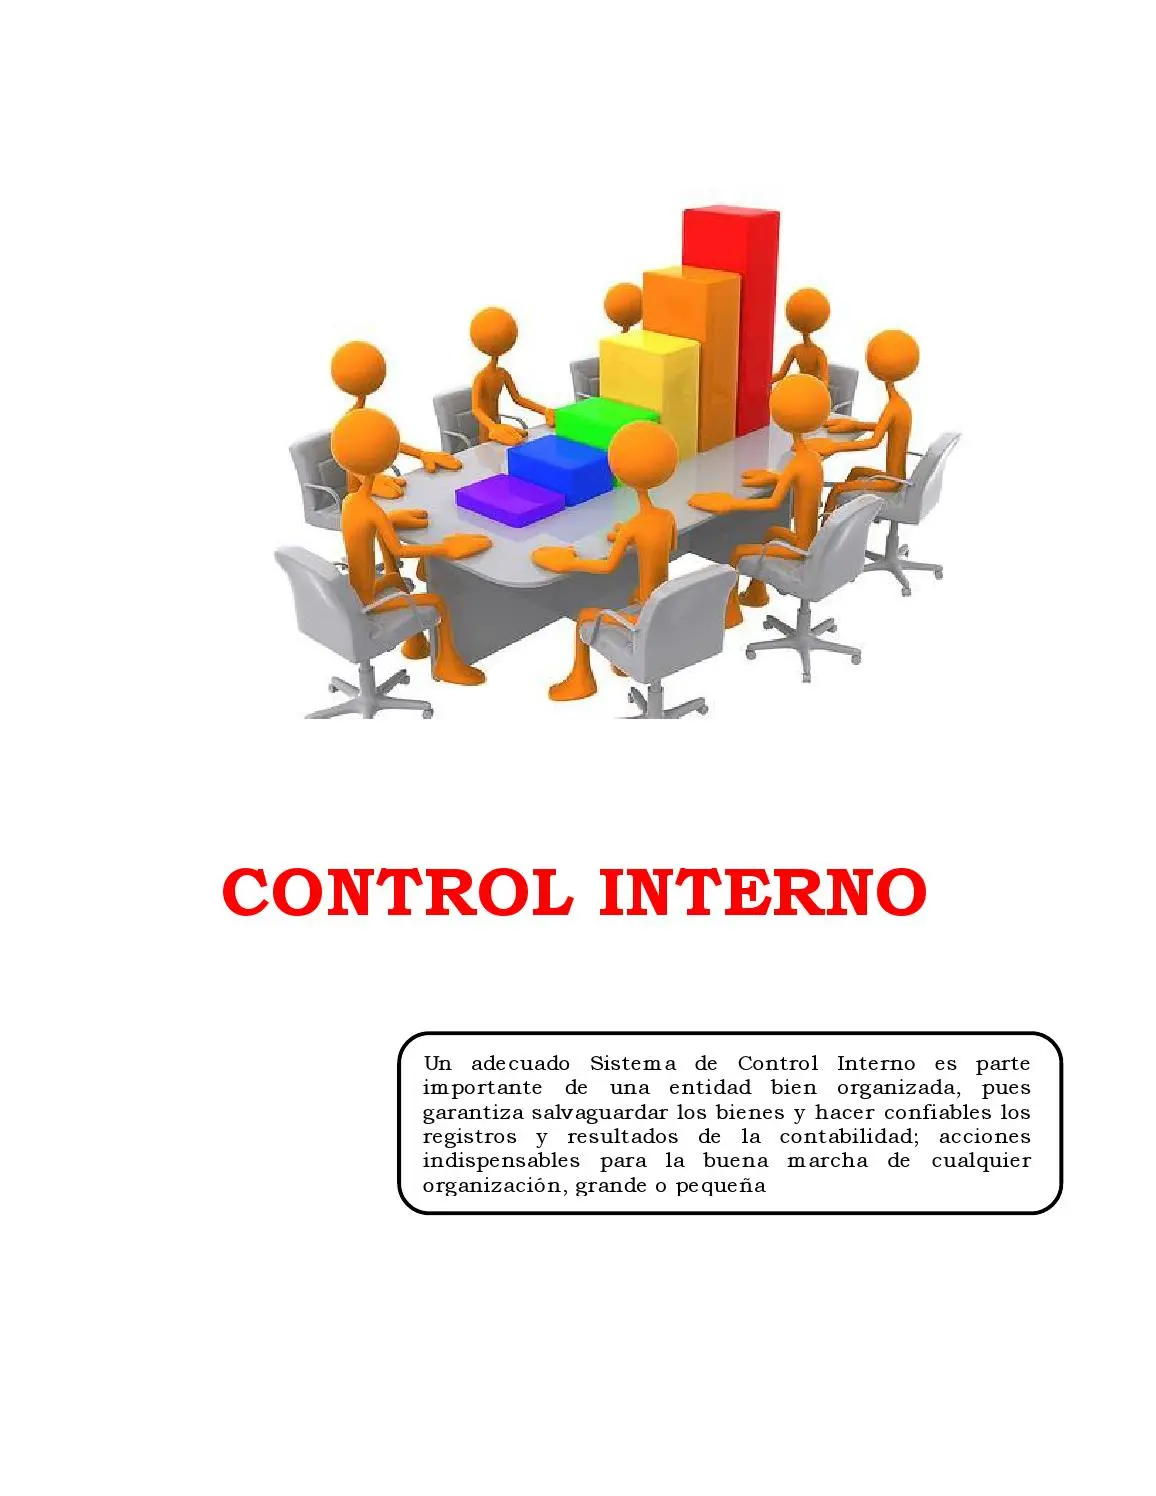 auditoria estudio y evaluacion del control interno - Qué es el estudio y evaluación del control interno